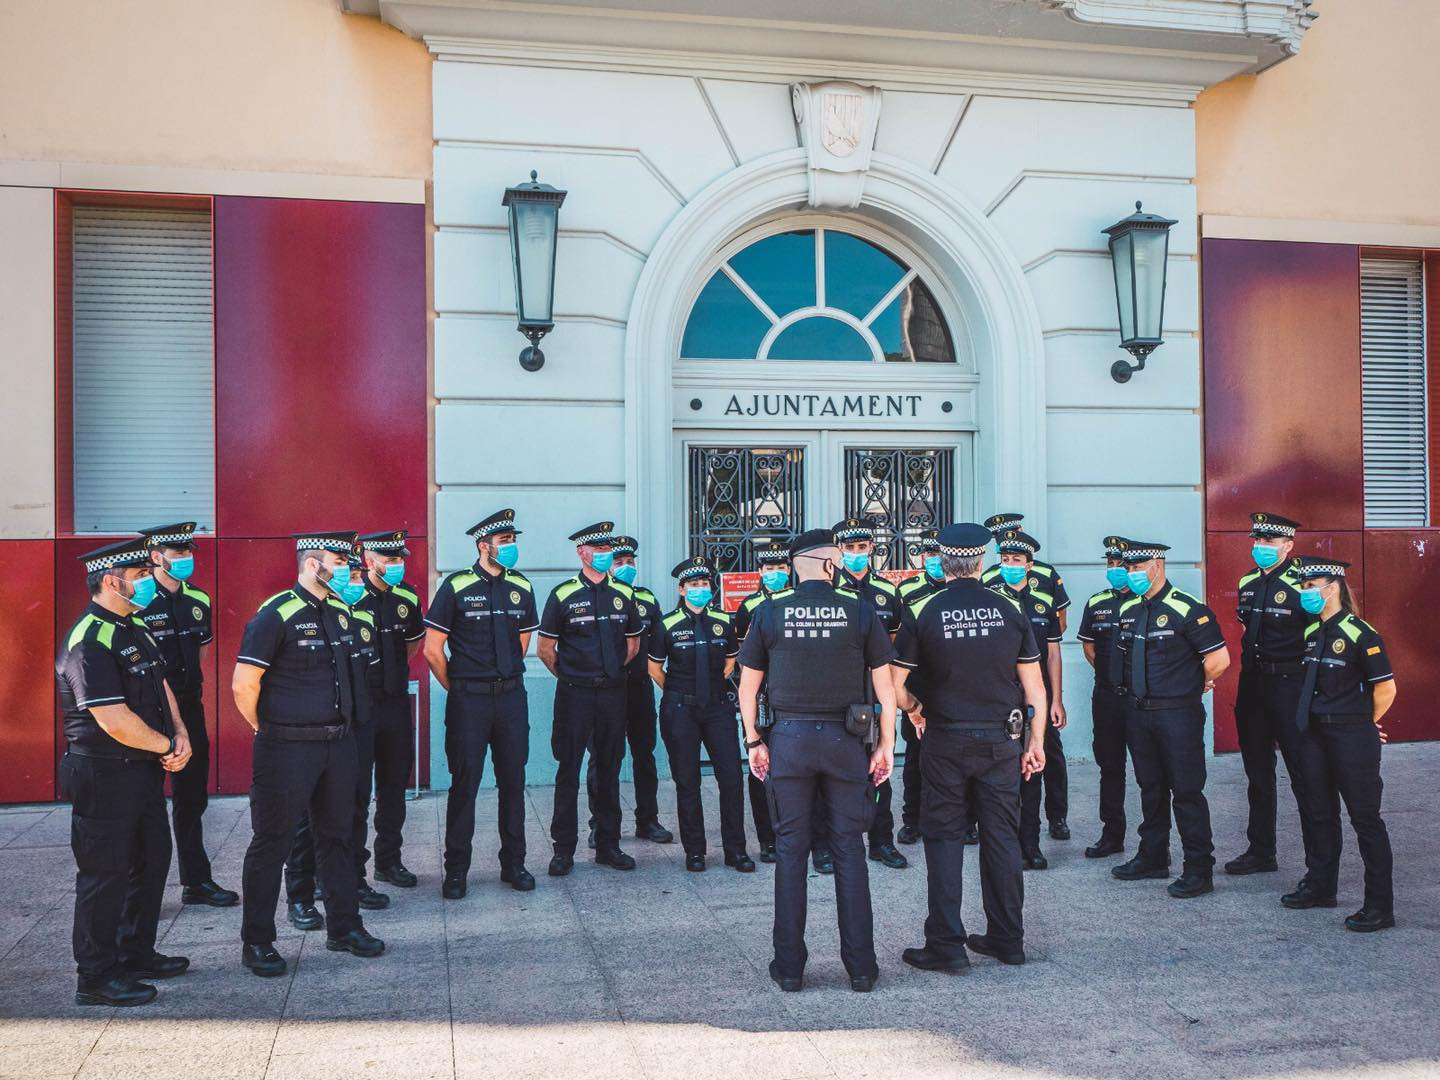 La nueva promoción de la Policía Local de Santa Coloma de Gramenet / AYUNTAMIENTO SANTA COLOMA